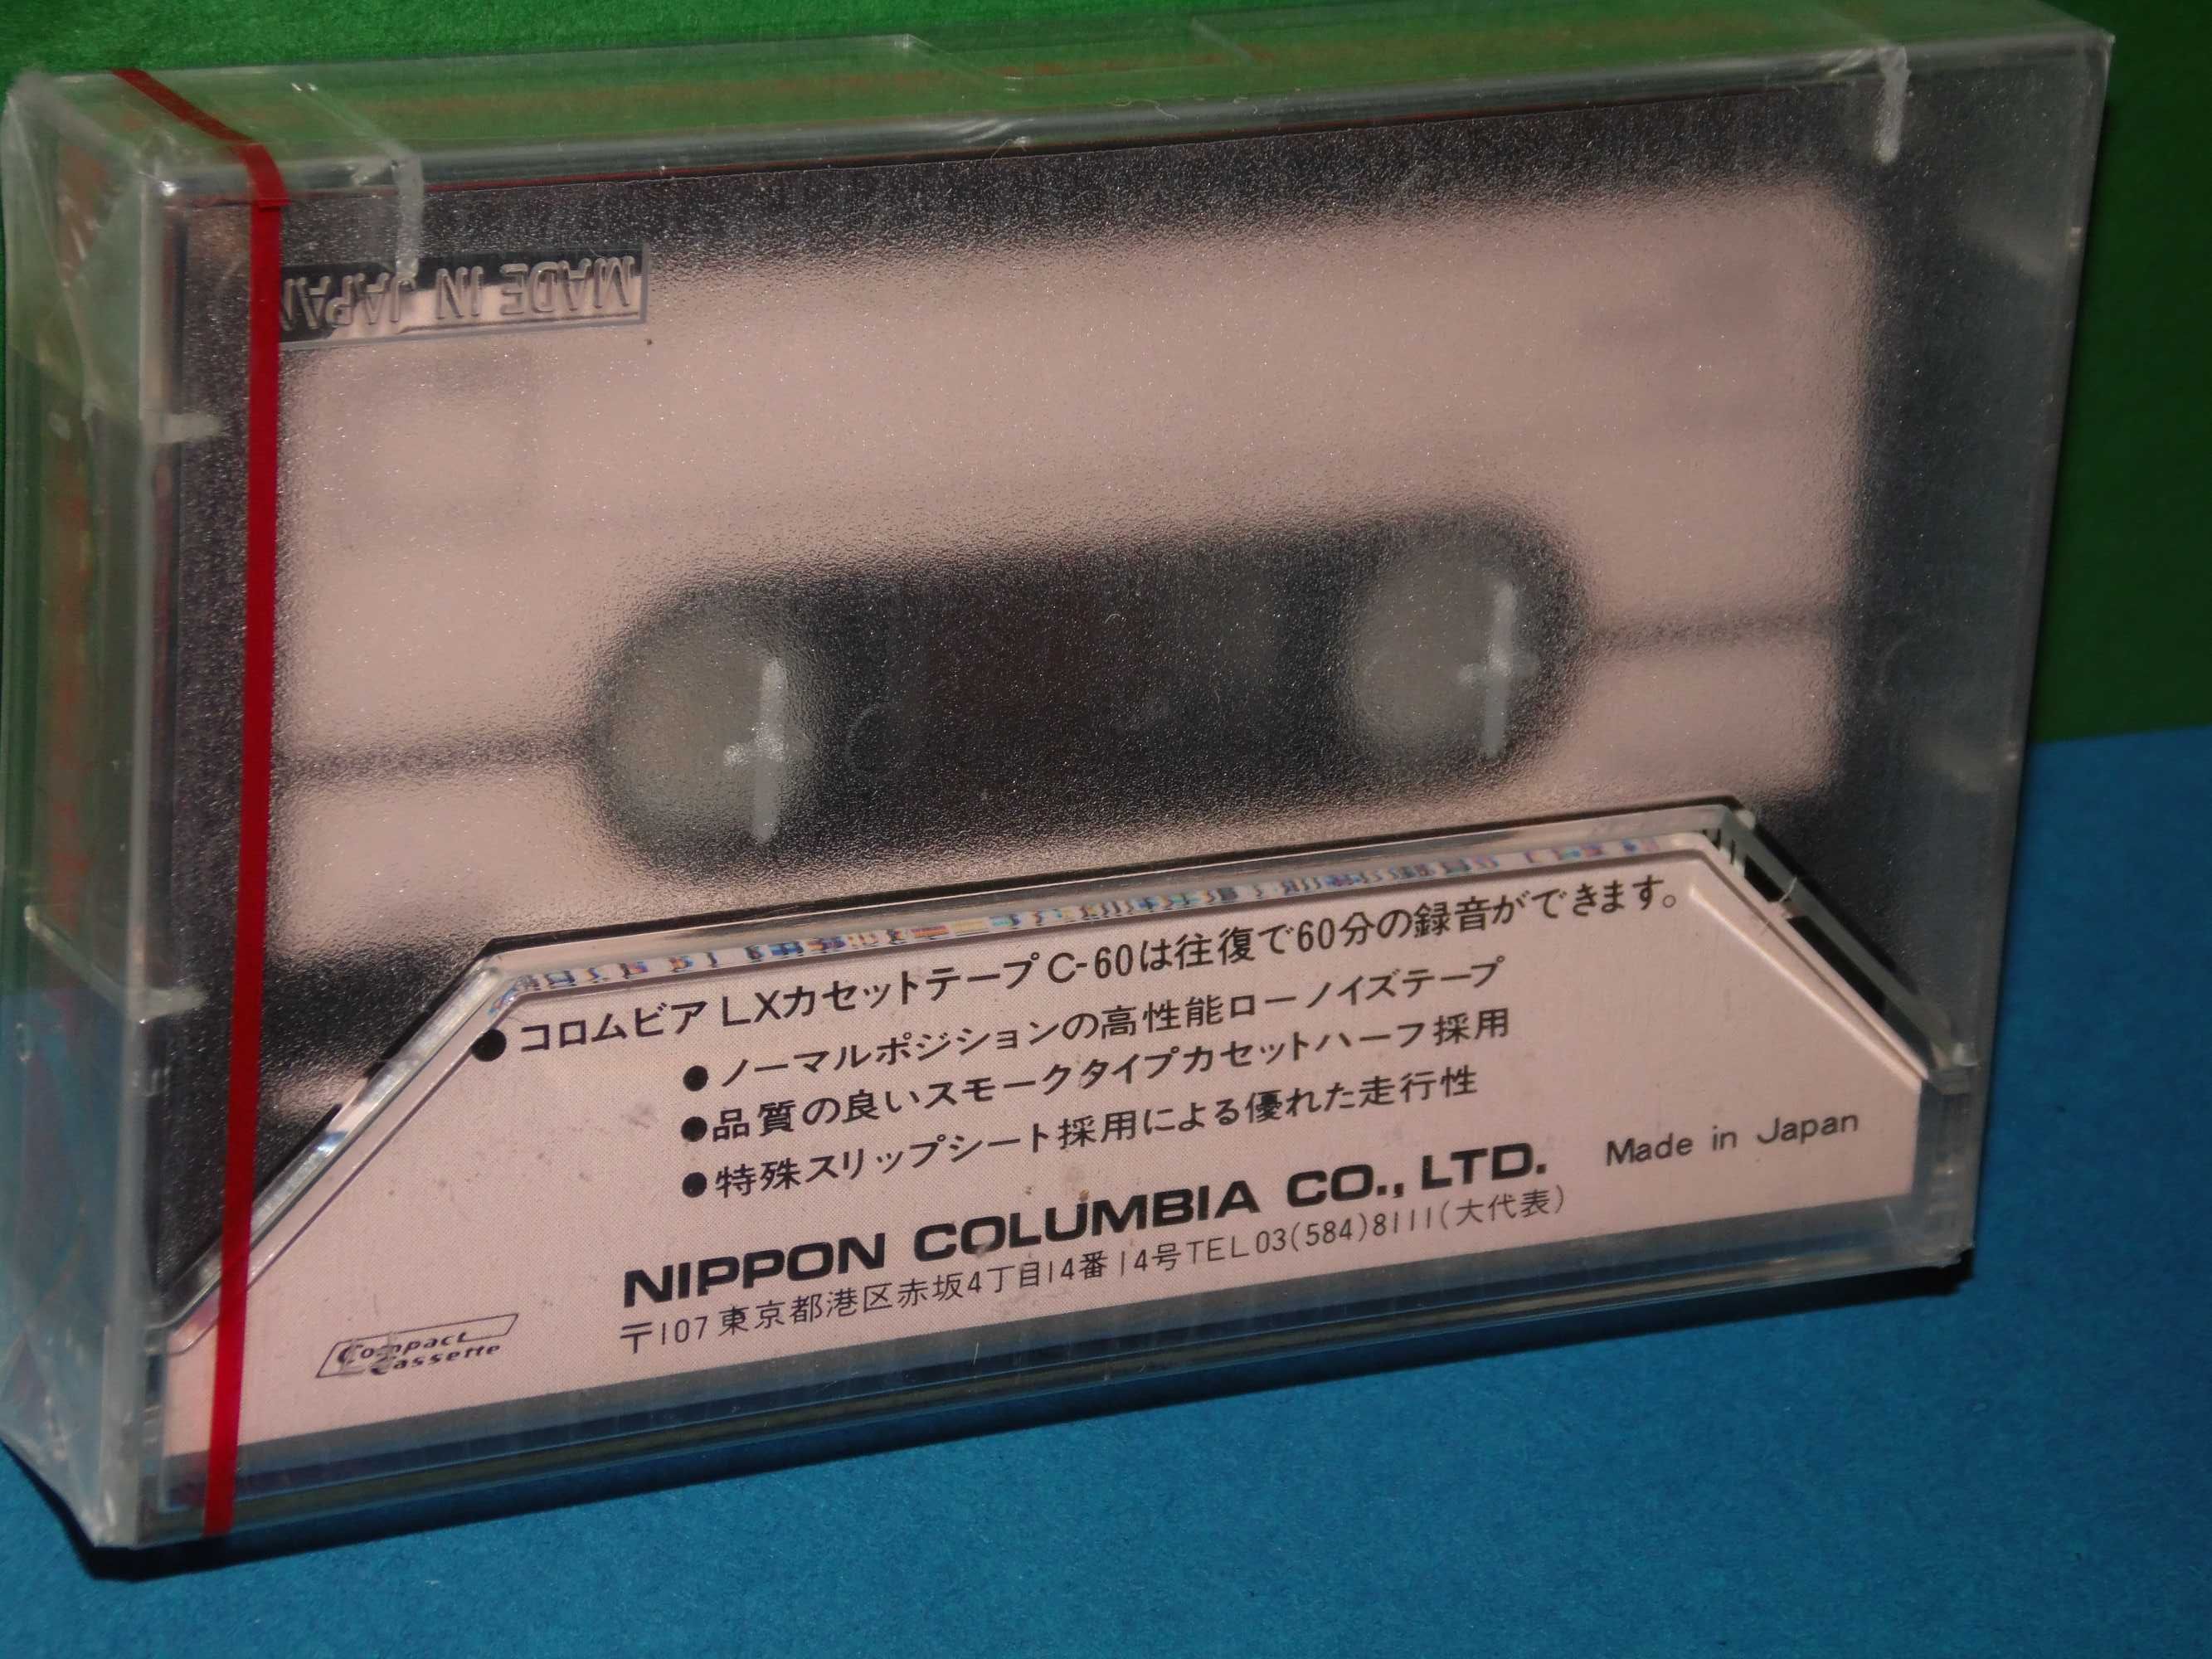 кассета COLUMBIA (DENON)  аудиокассета